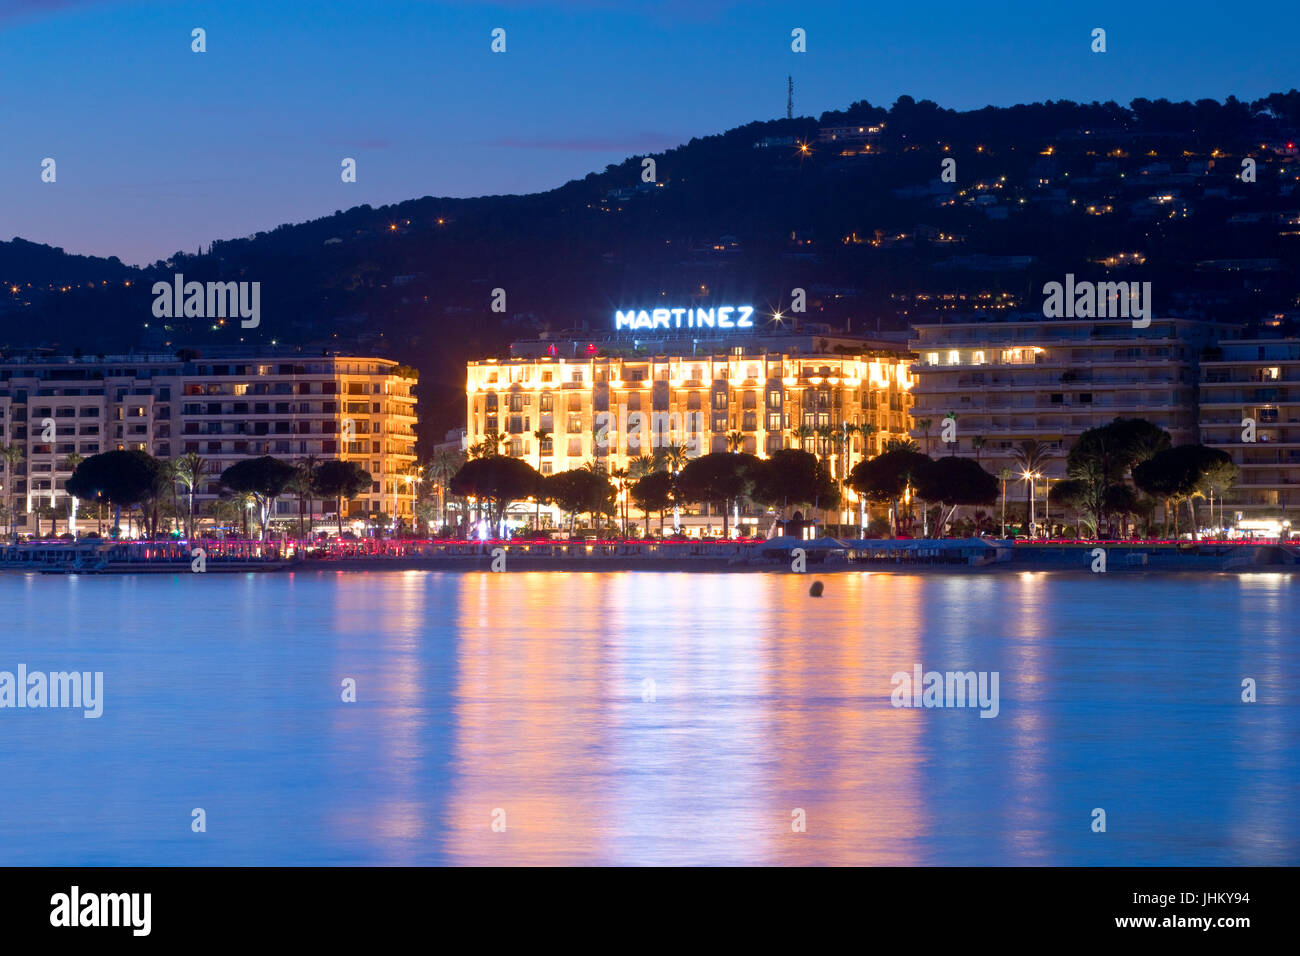 El famoso hotel Martinez en el Paseo de la Croisette, Cannes, Francia al atardecer Foto de stock